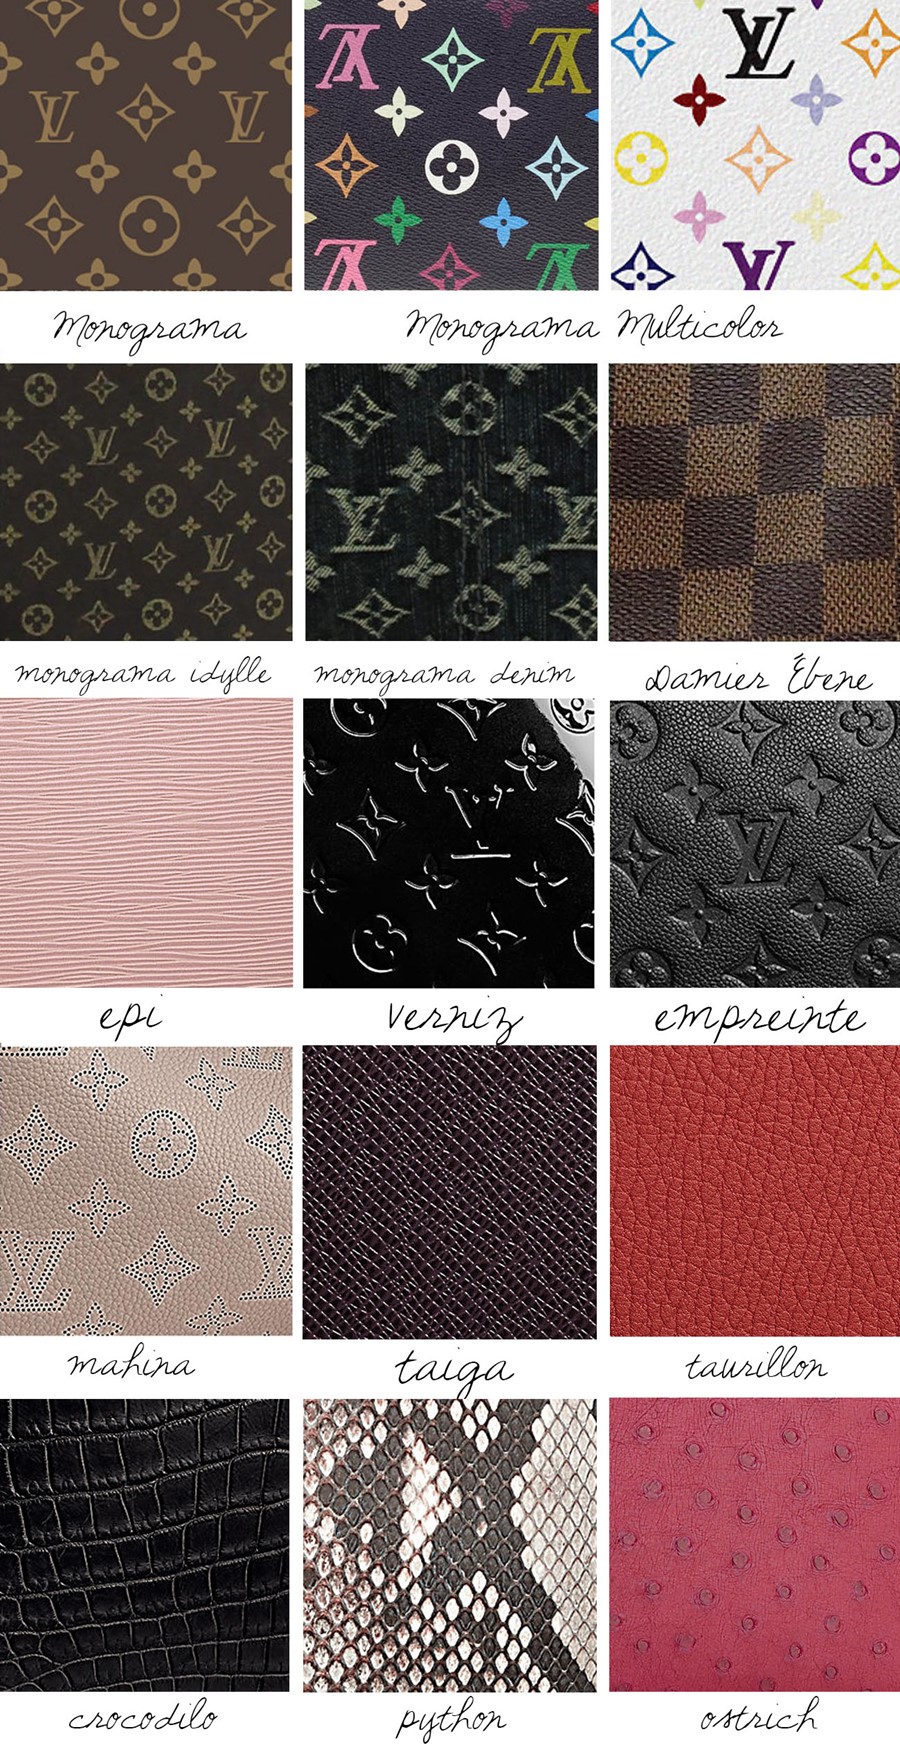 Manual de couros e tecidos Louis Vuitton - Etiqueta Unica